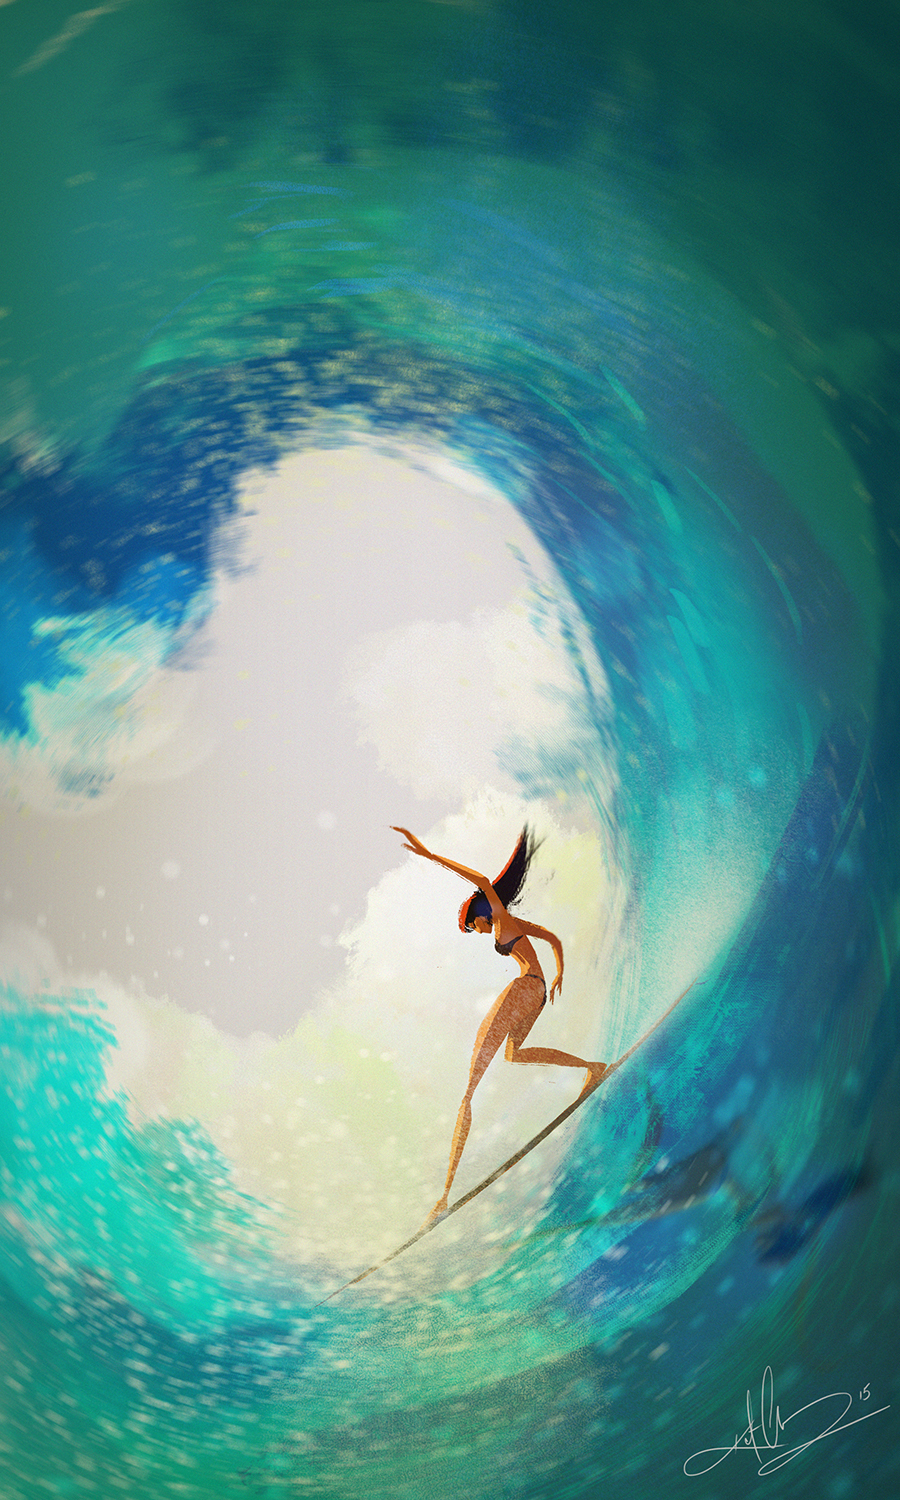 surfing surfboard beach Ocean Bikin girl relax refresh sunset waves sport lighting